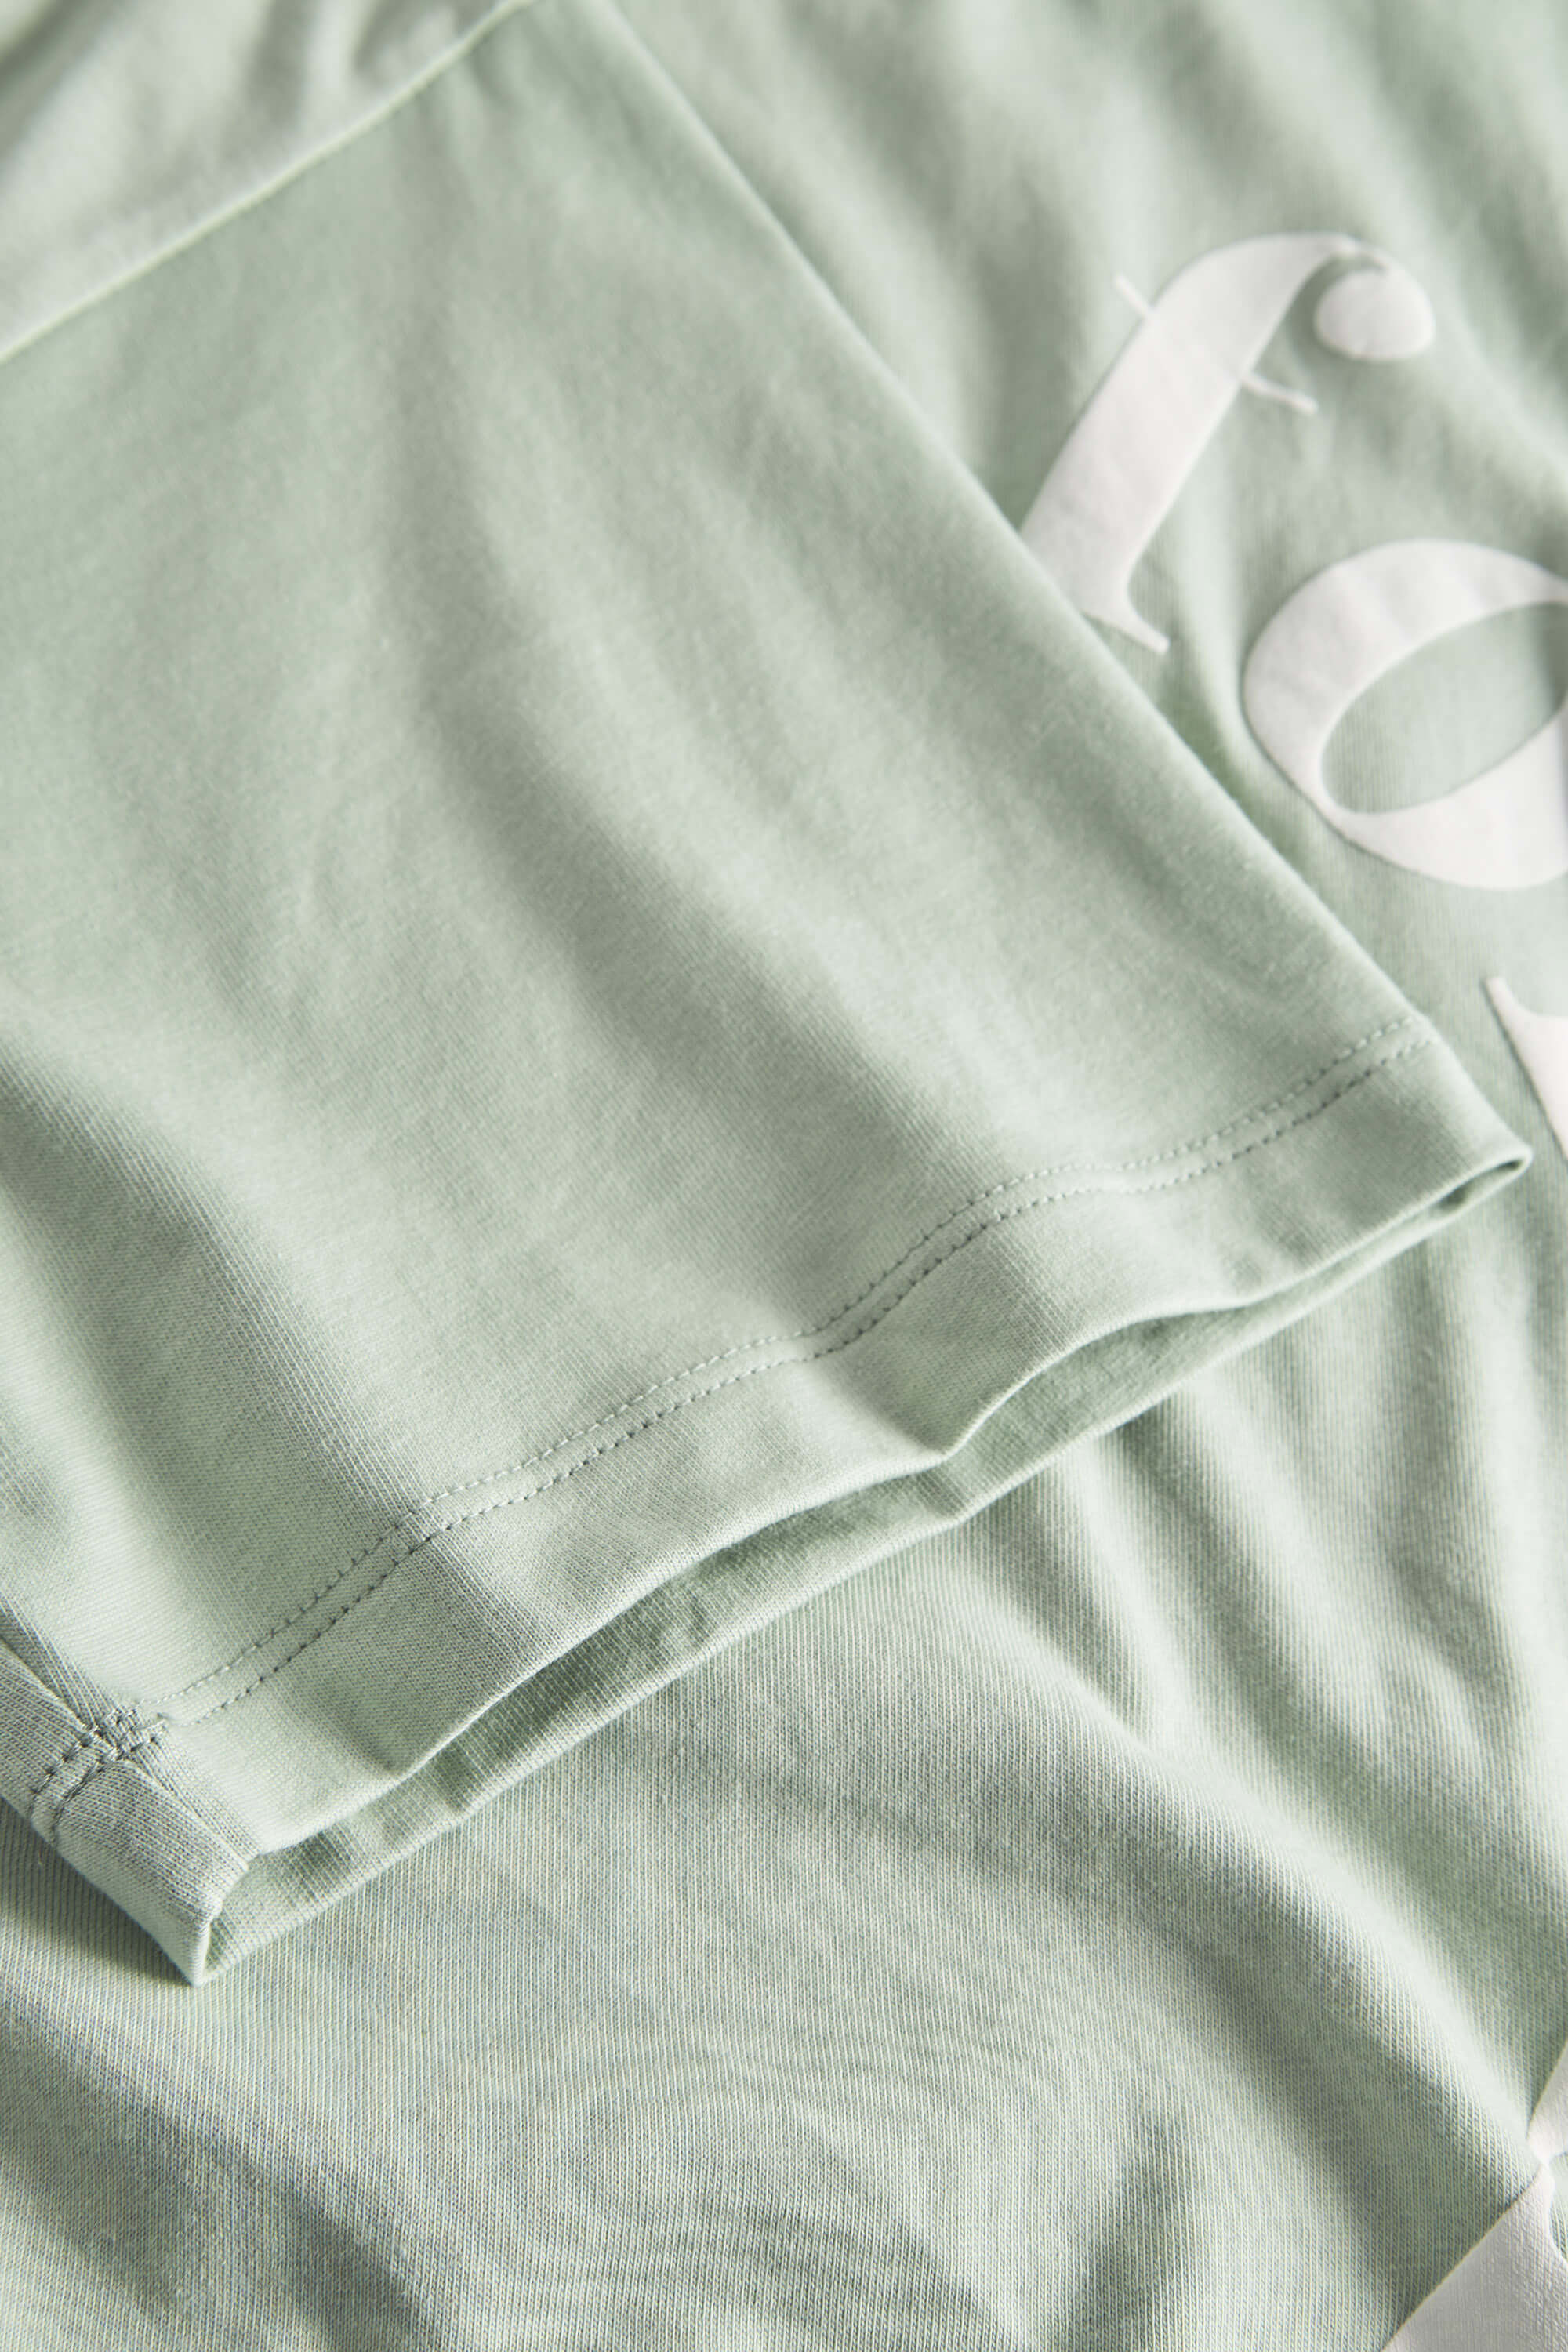 Herren T-Shirt, hellgrün, 100% Baumwolle  von Colours & Sons